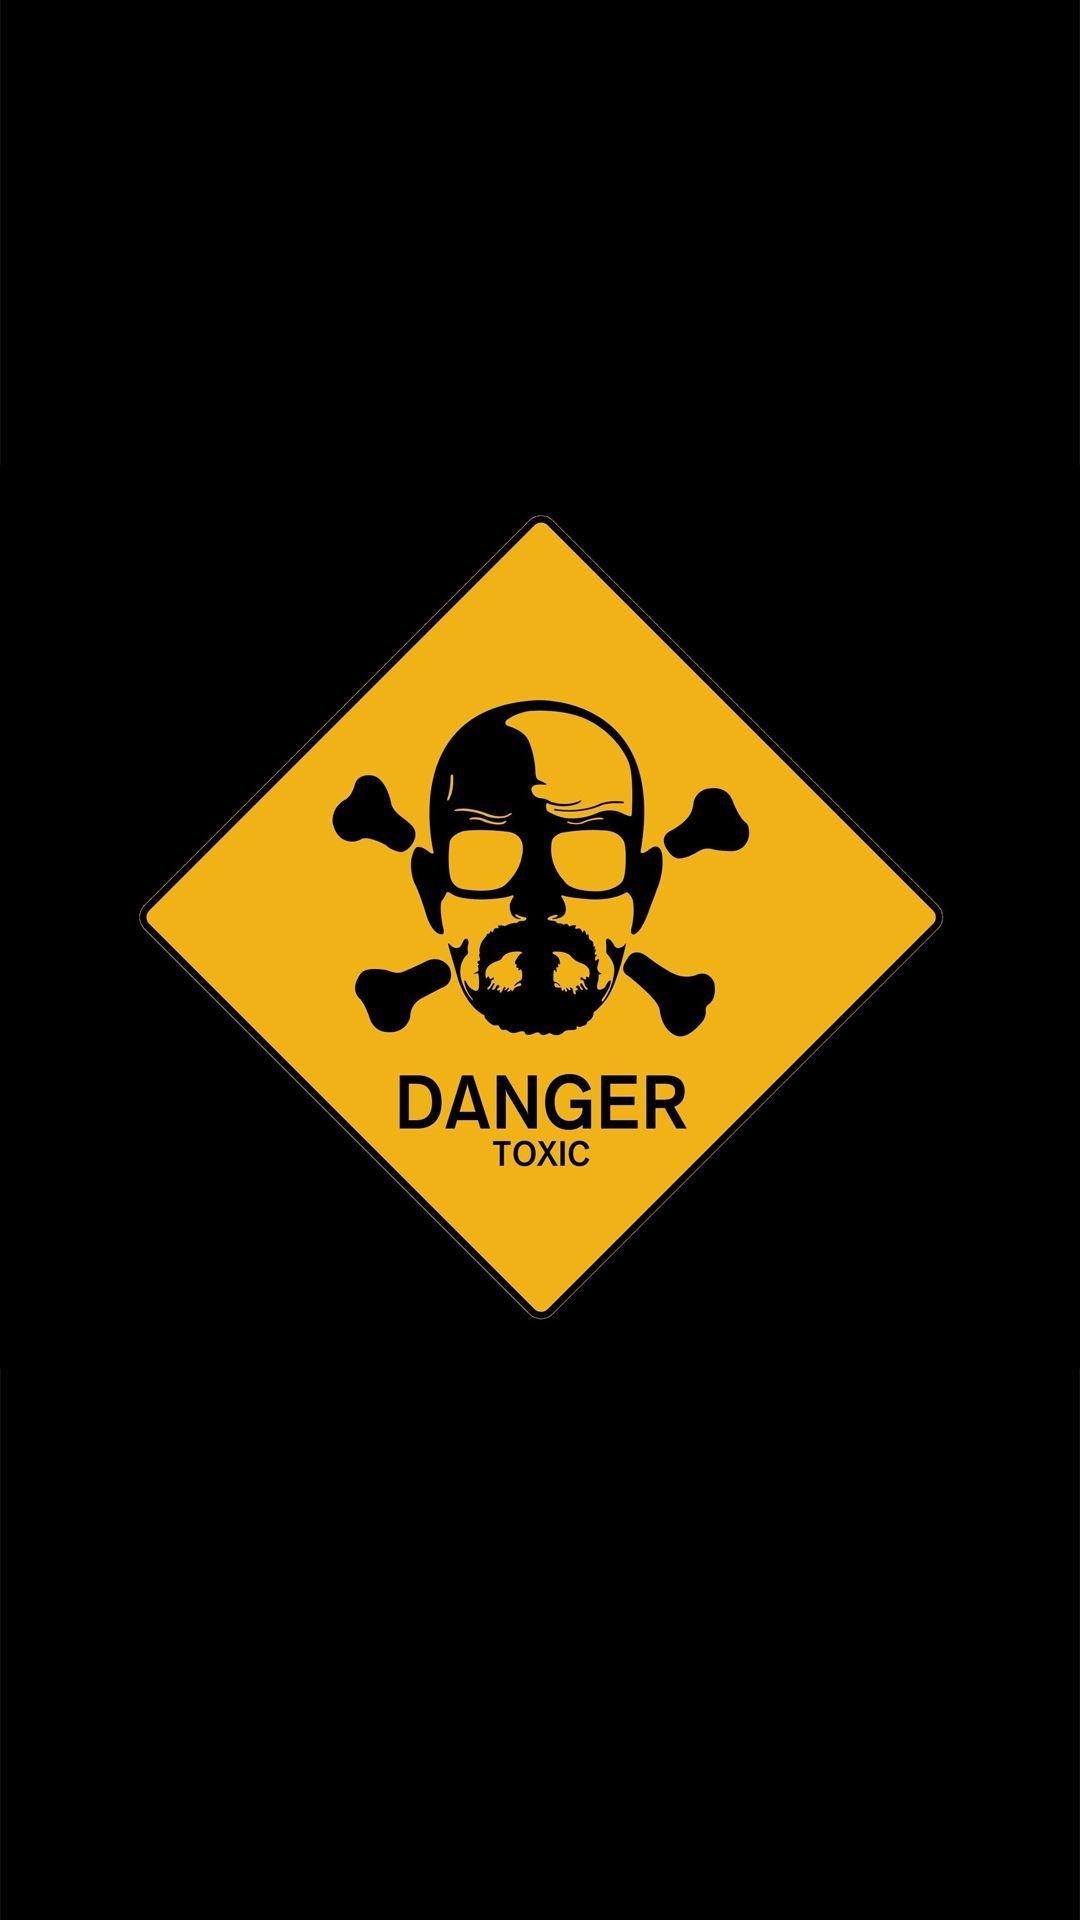 Danger toxic logo